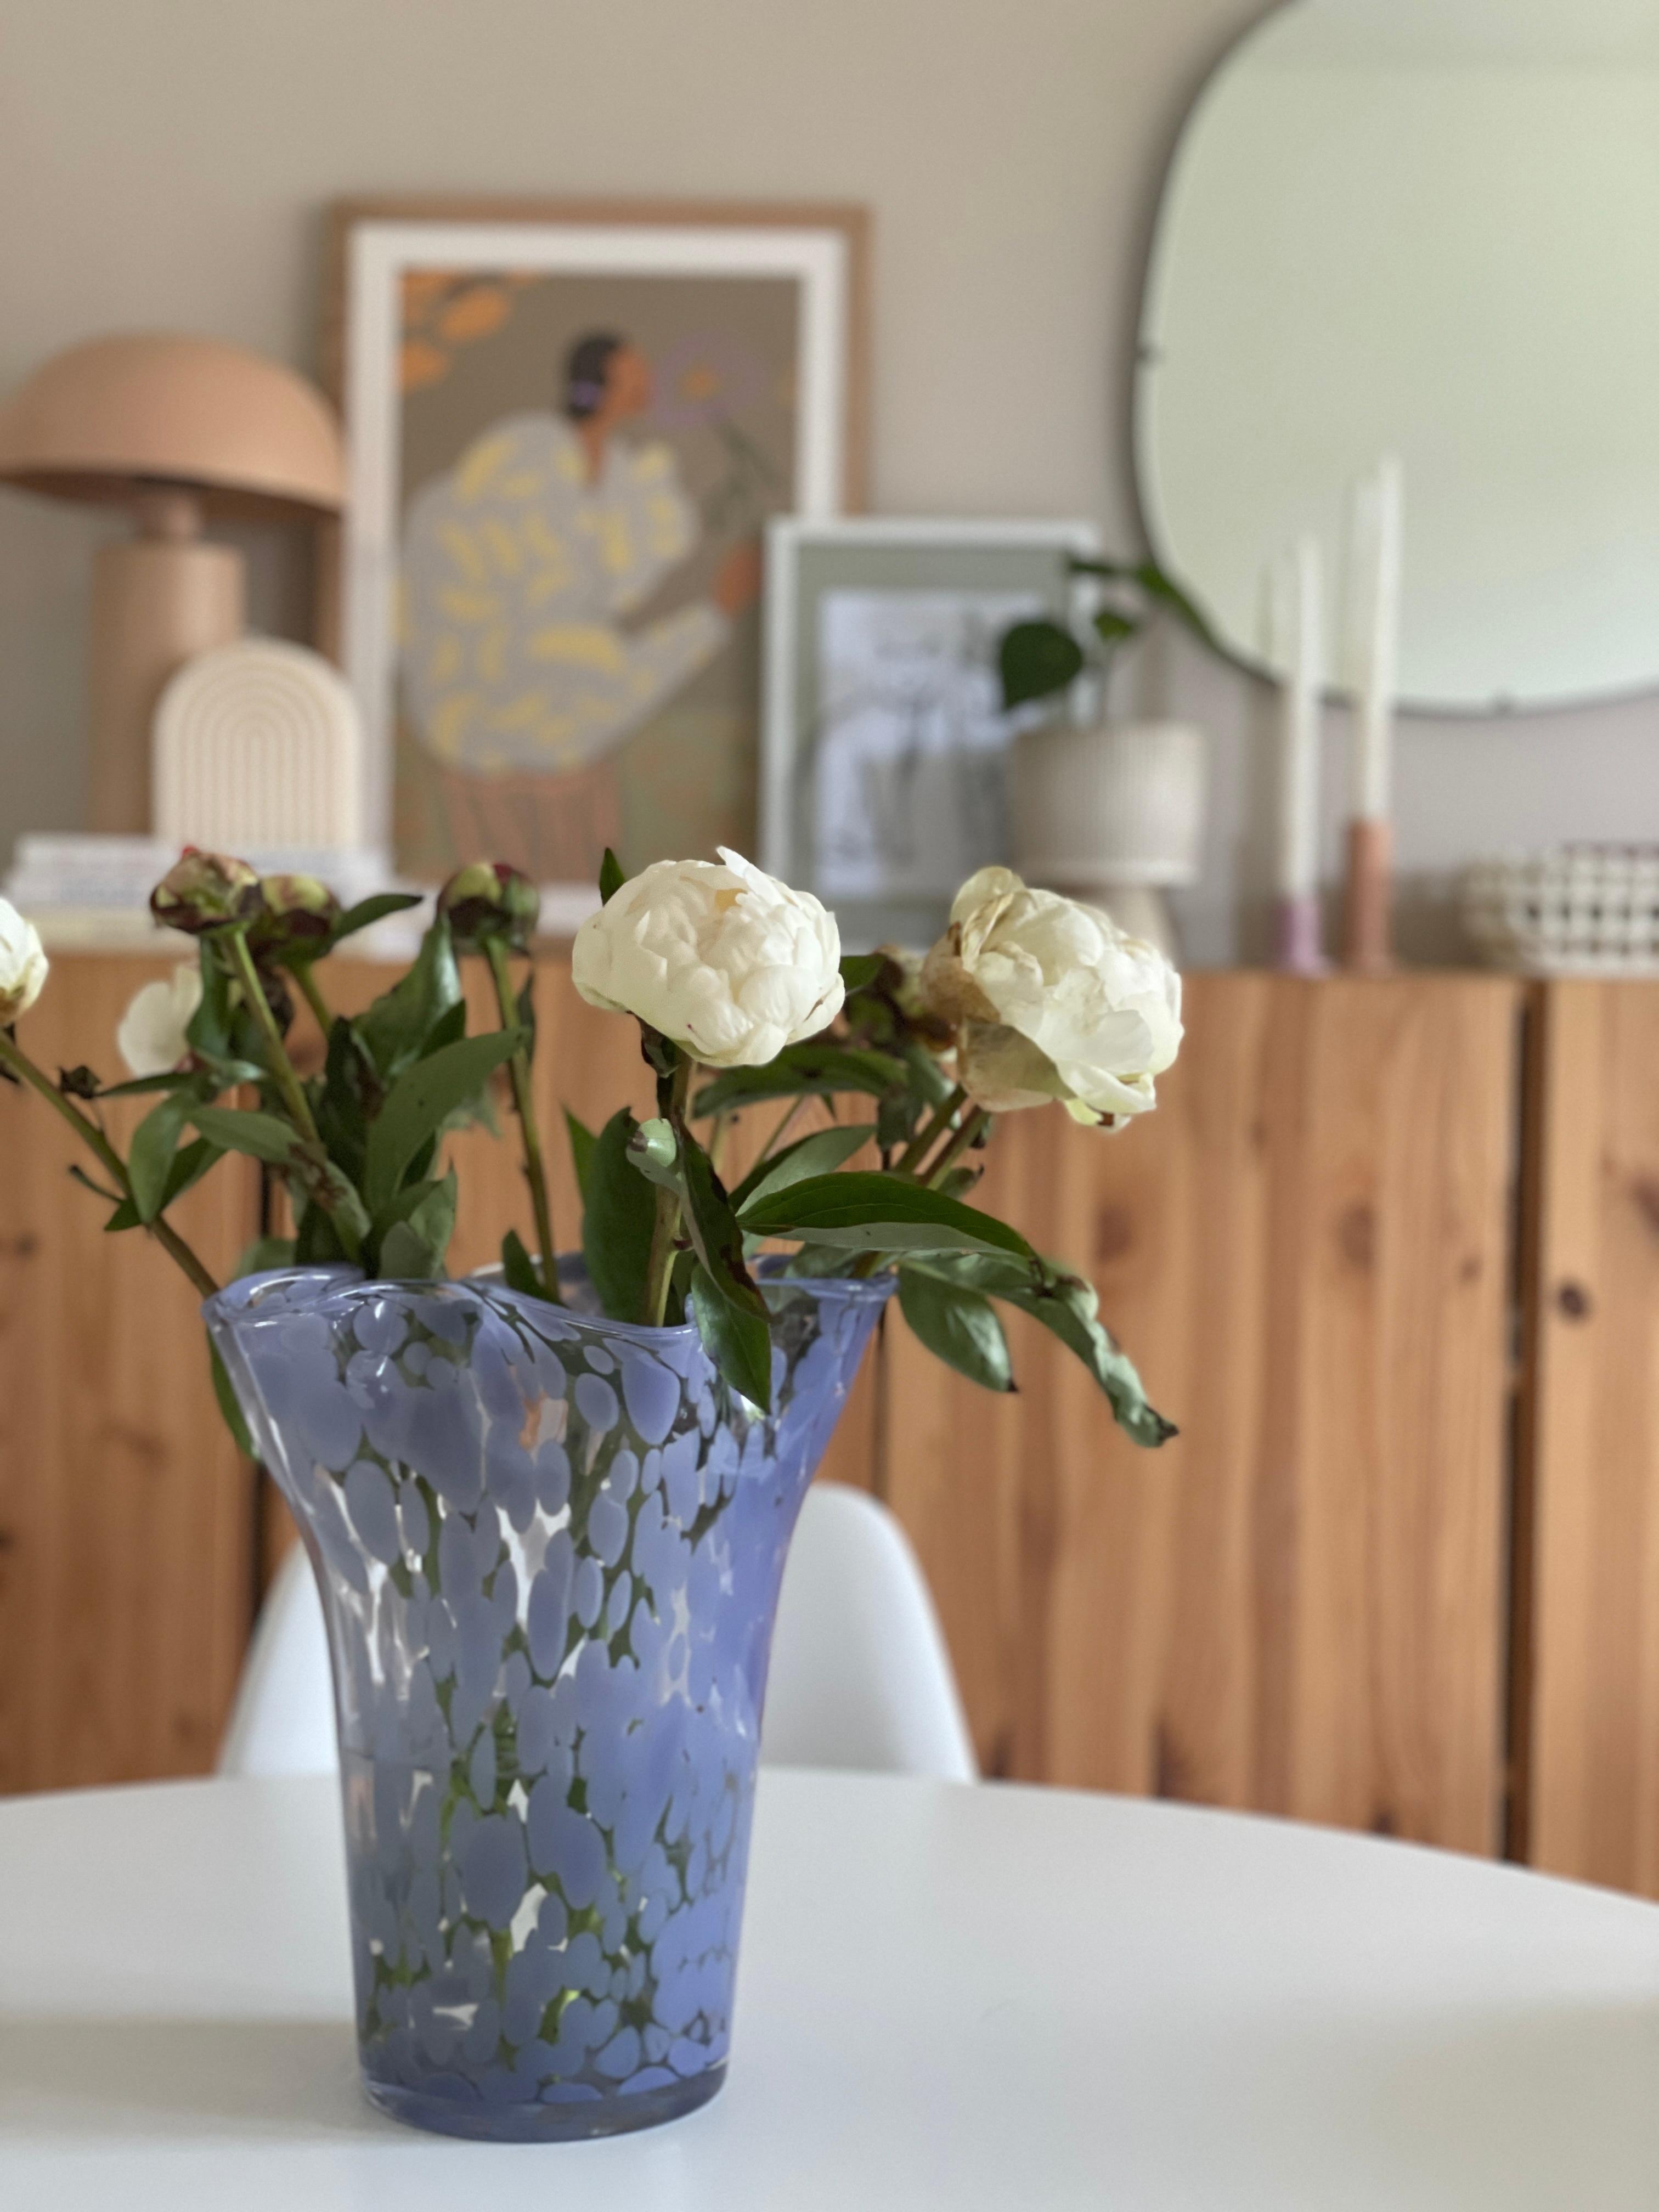 Blümchen gehen immer. 🤍
#freshflowers #couchliebt #wohnzimmer #dekoration #inspiration #cozy 